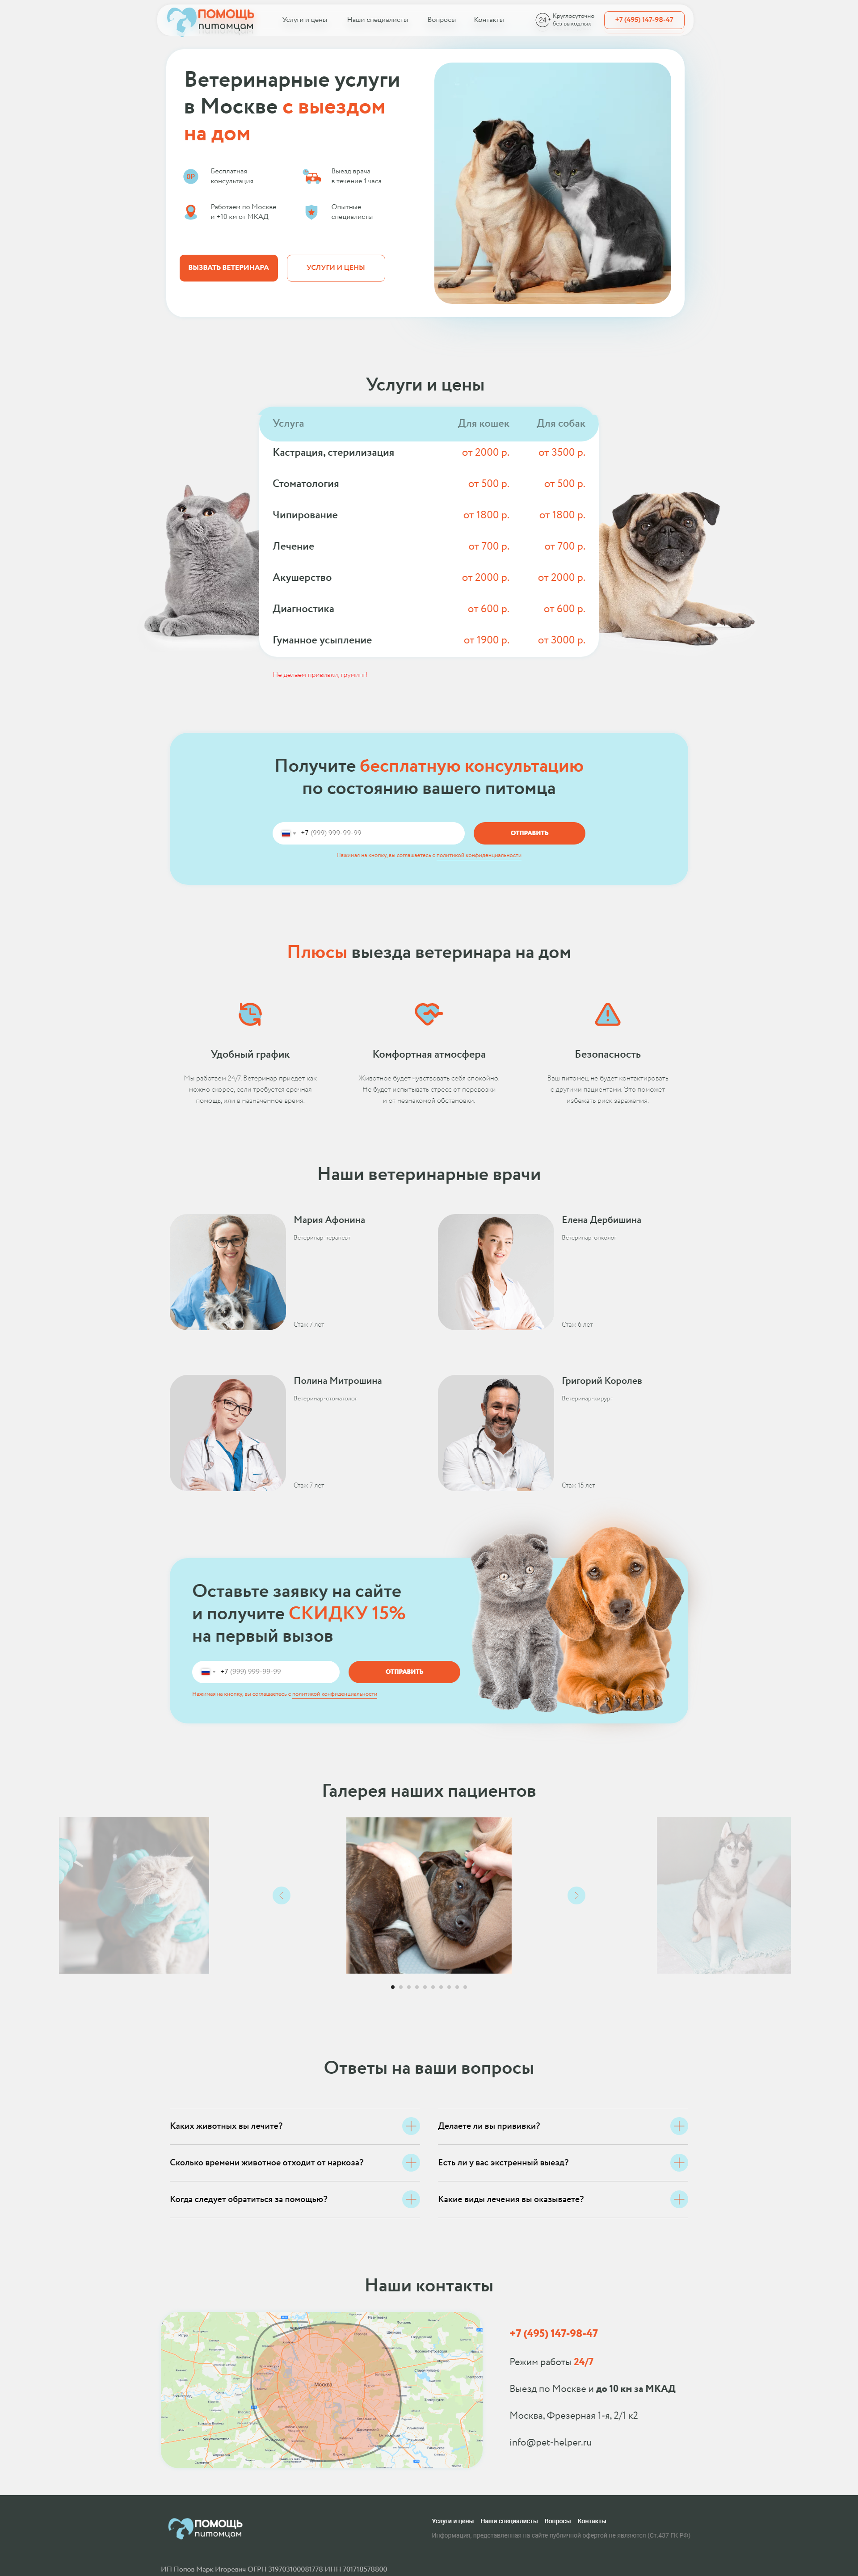 Пример pet-helper.ru сайта из рекламной выдачи